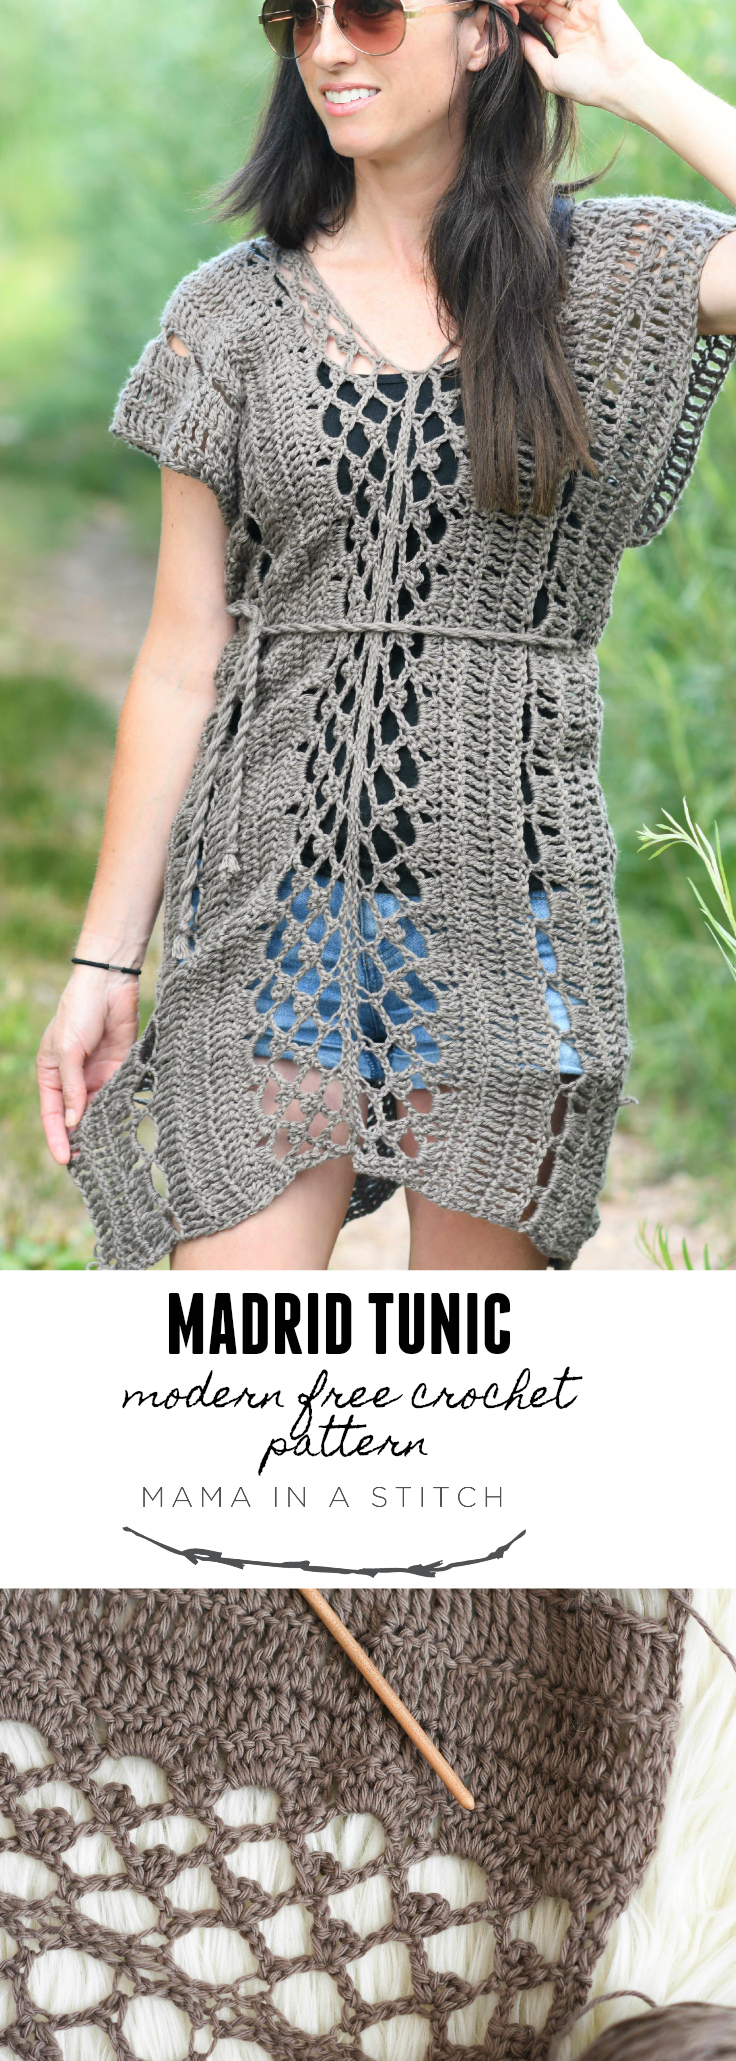 Madrid Tunic Free Crochet Pattern